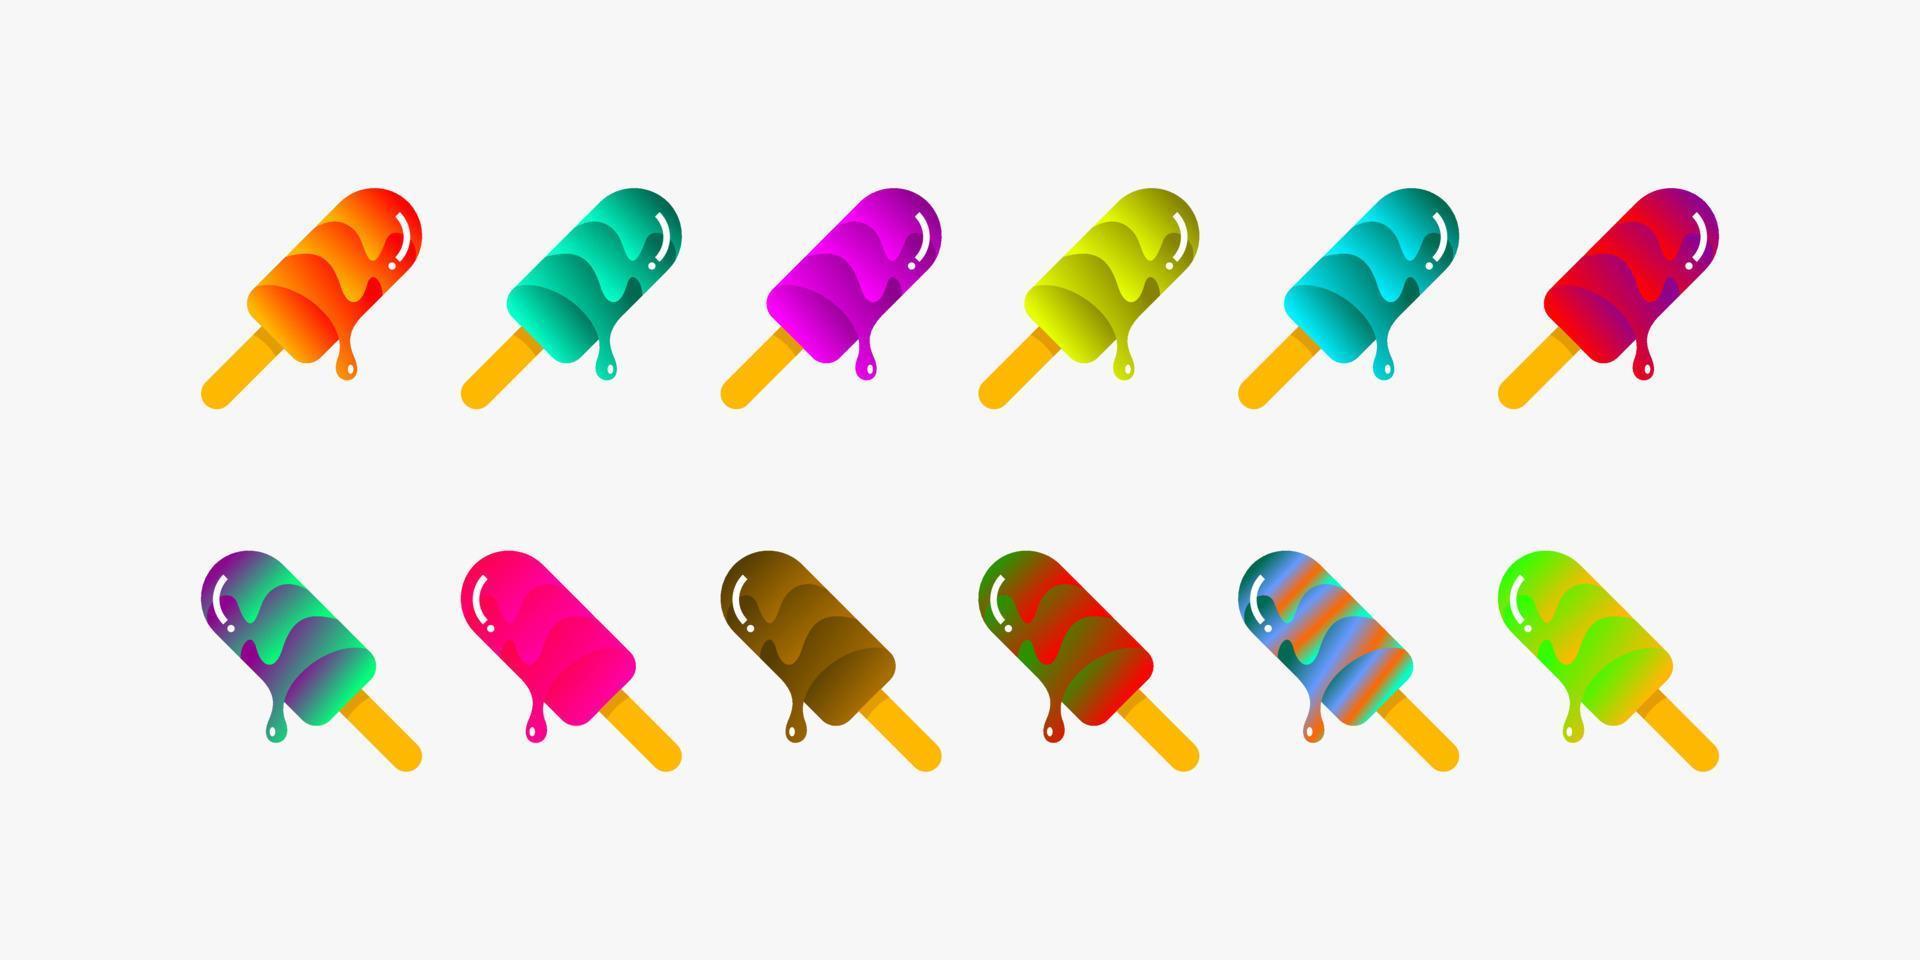 doze designs de logotipo de sorvete com vários sabores. vetor